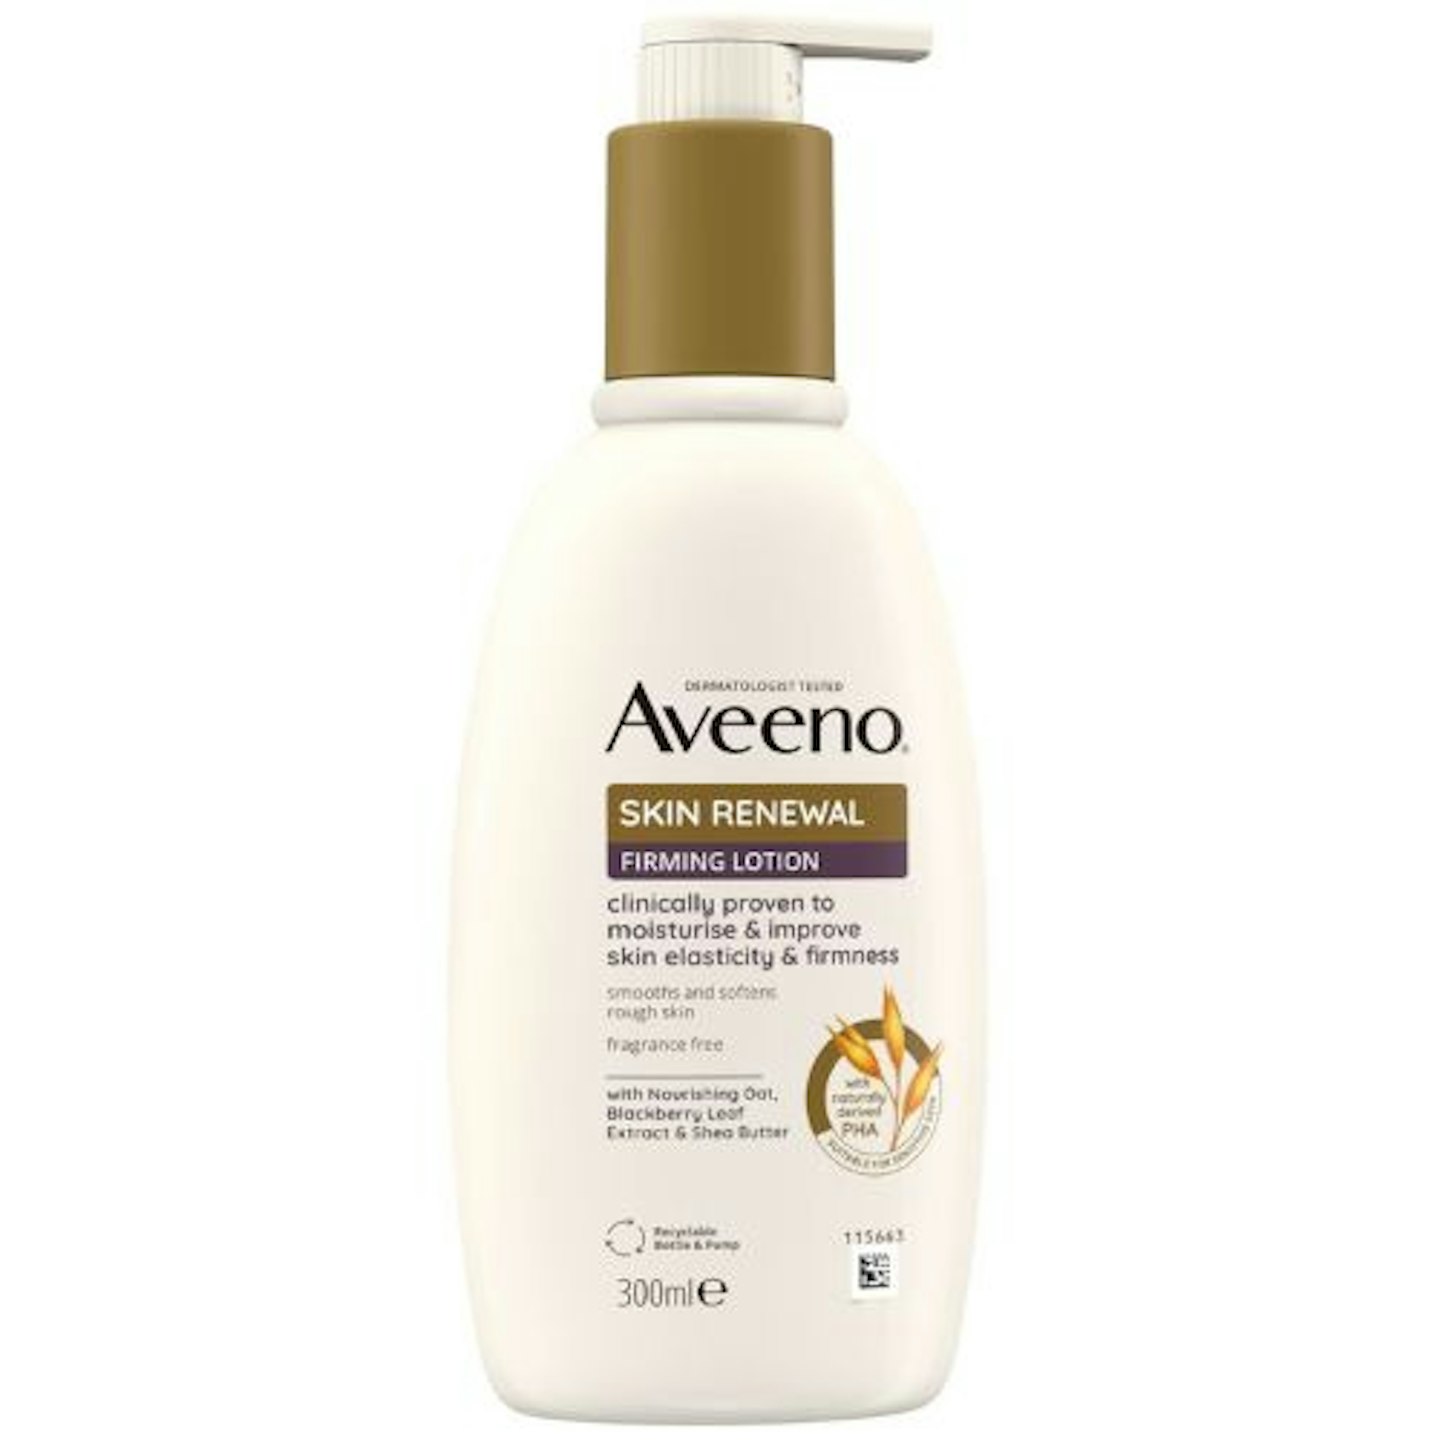 Aveeno Skin Renewal Firming Lotion